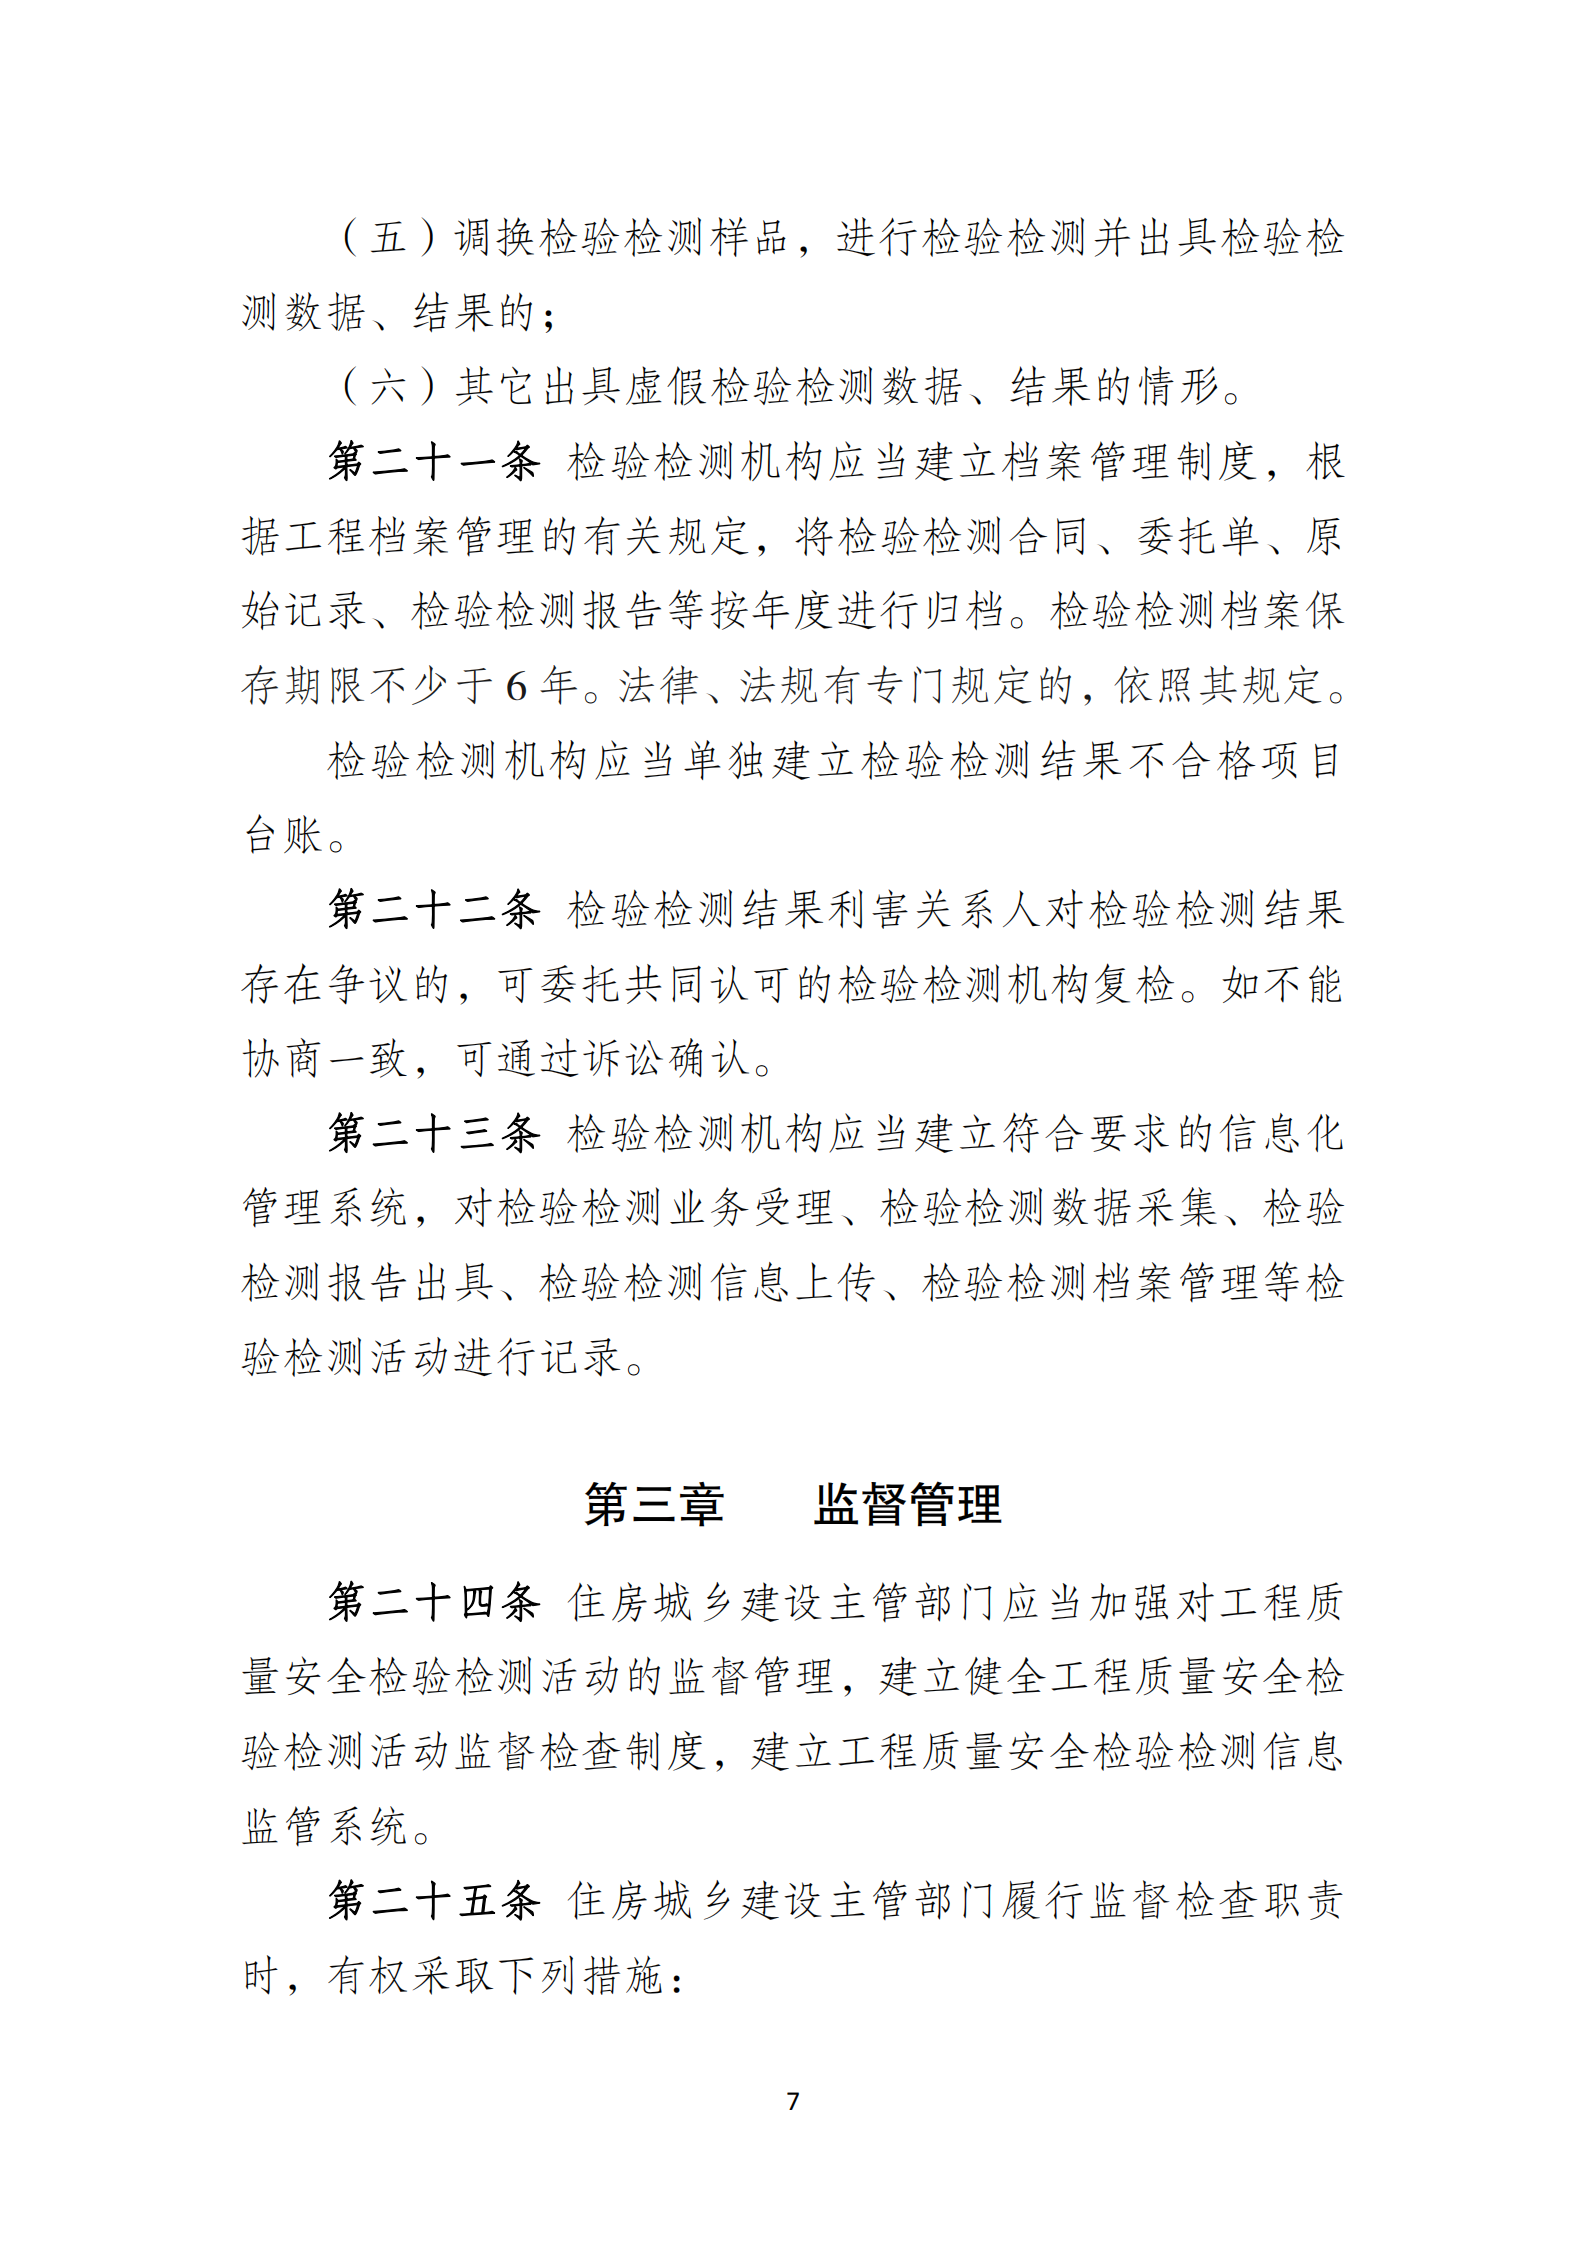 淮安市建設工程檢測機構監督管理辦法[2020]120號文_06.png